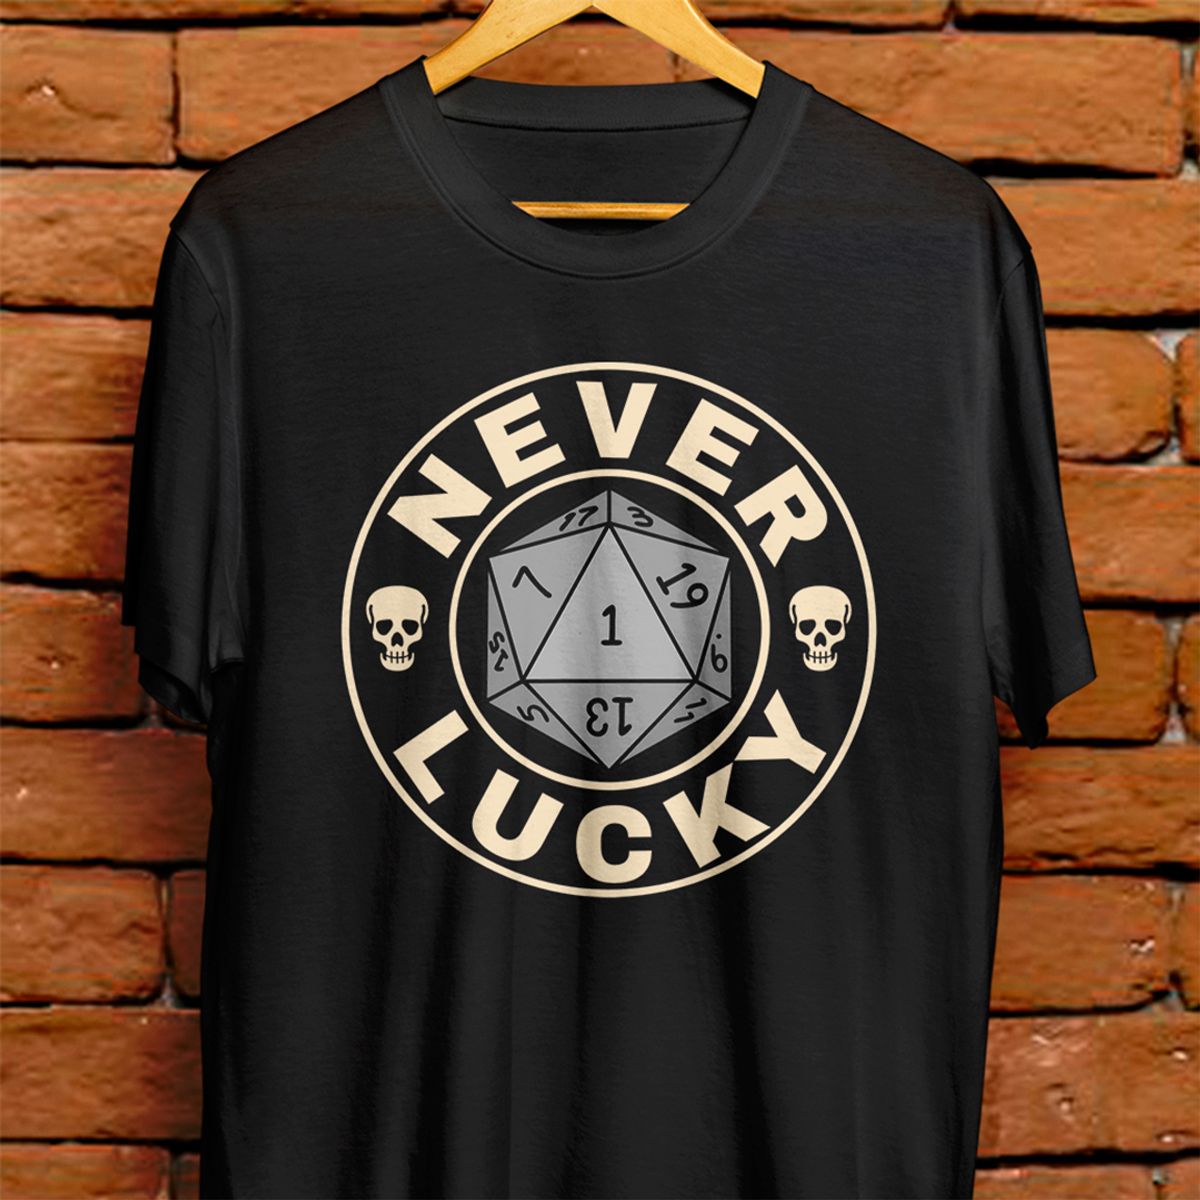 Nome do produto: Camiseta - Never lucky